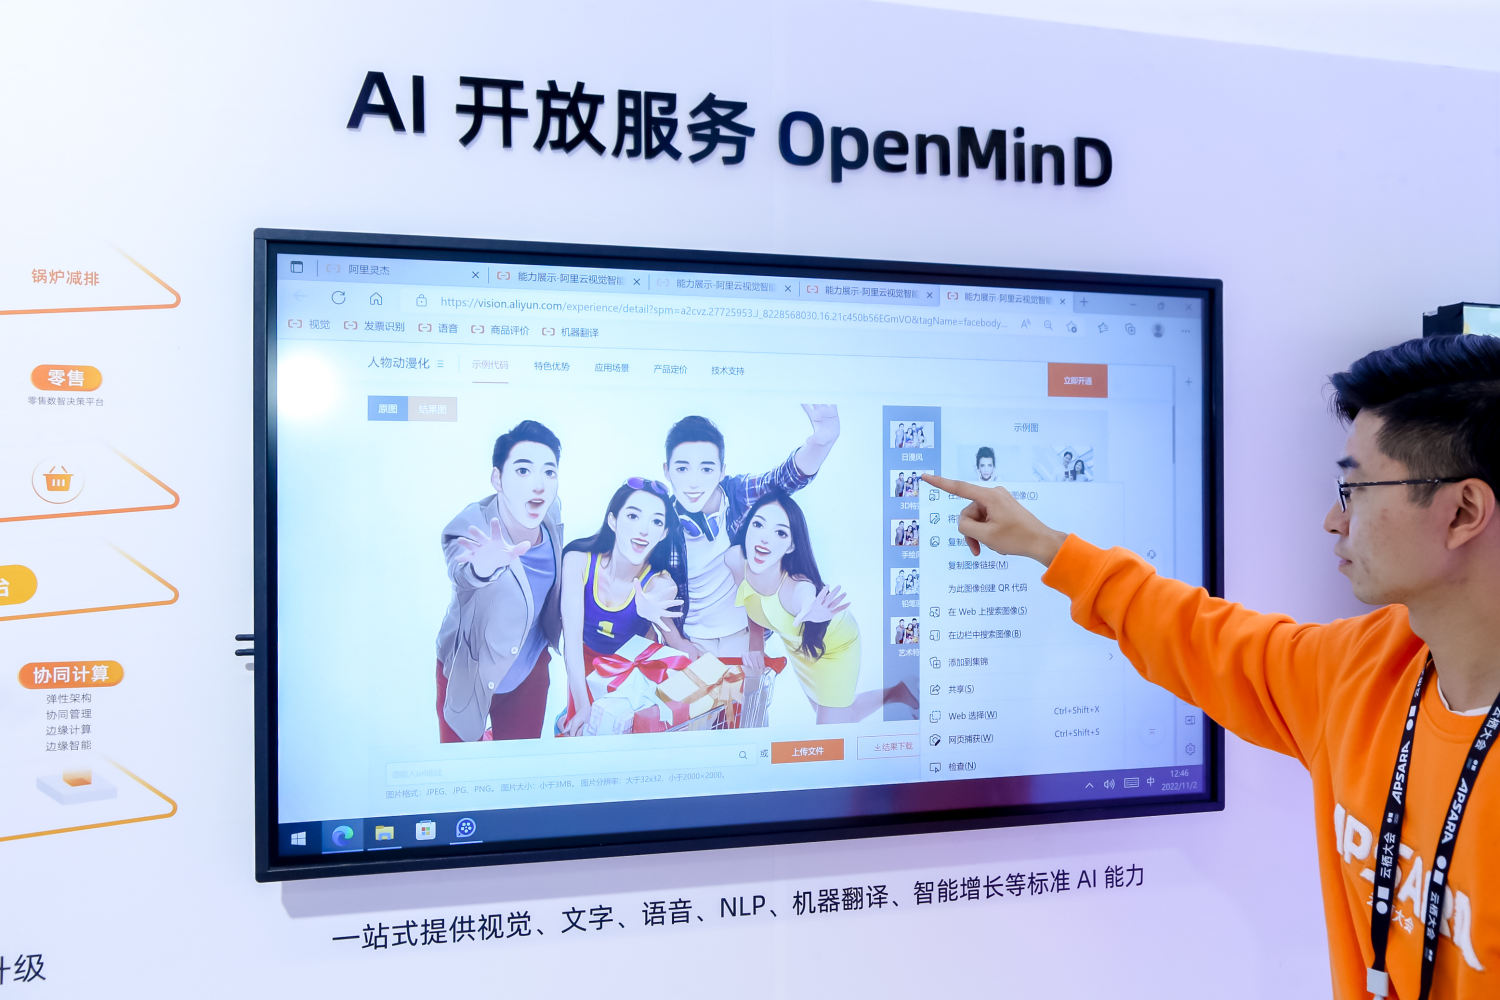 達摩院ModelScope開放中文語言理解及AI繪圖等模型